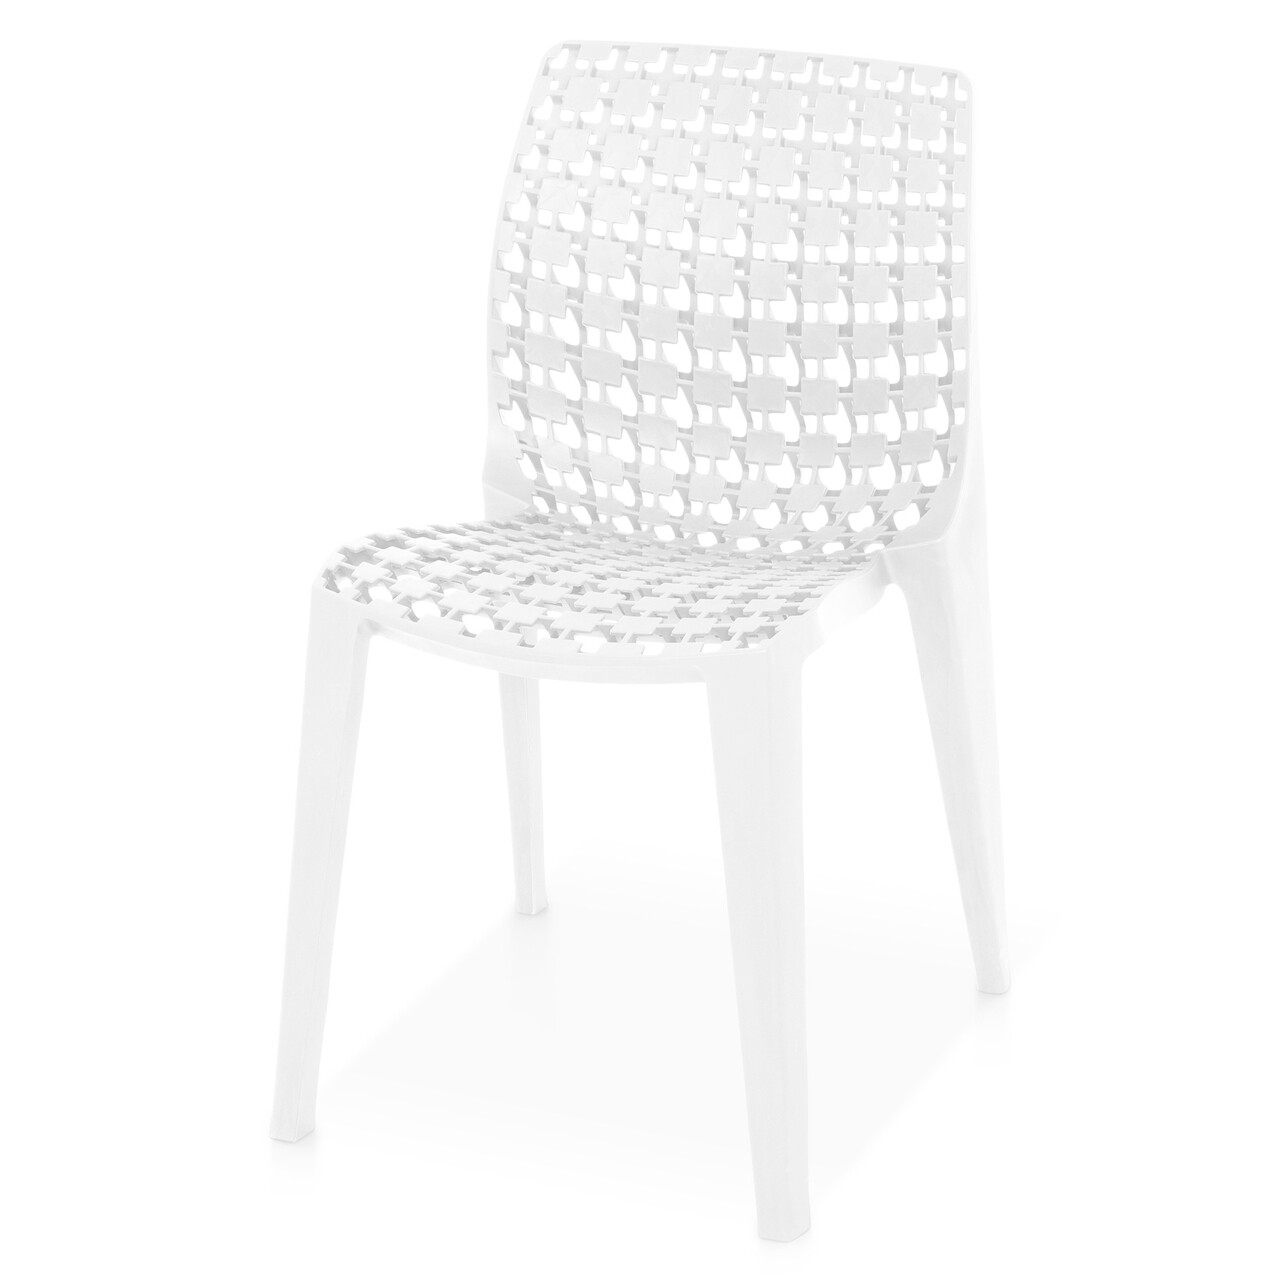 Egymásra rakható szék, szürke, 48 x 52 x 80 cm, műanyag, fehér